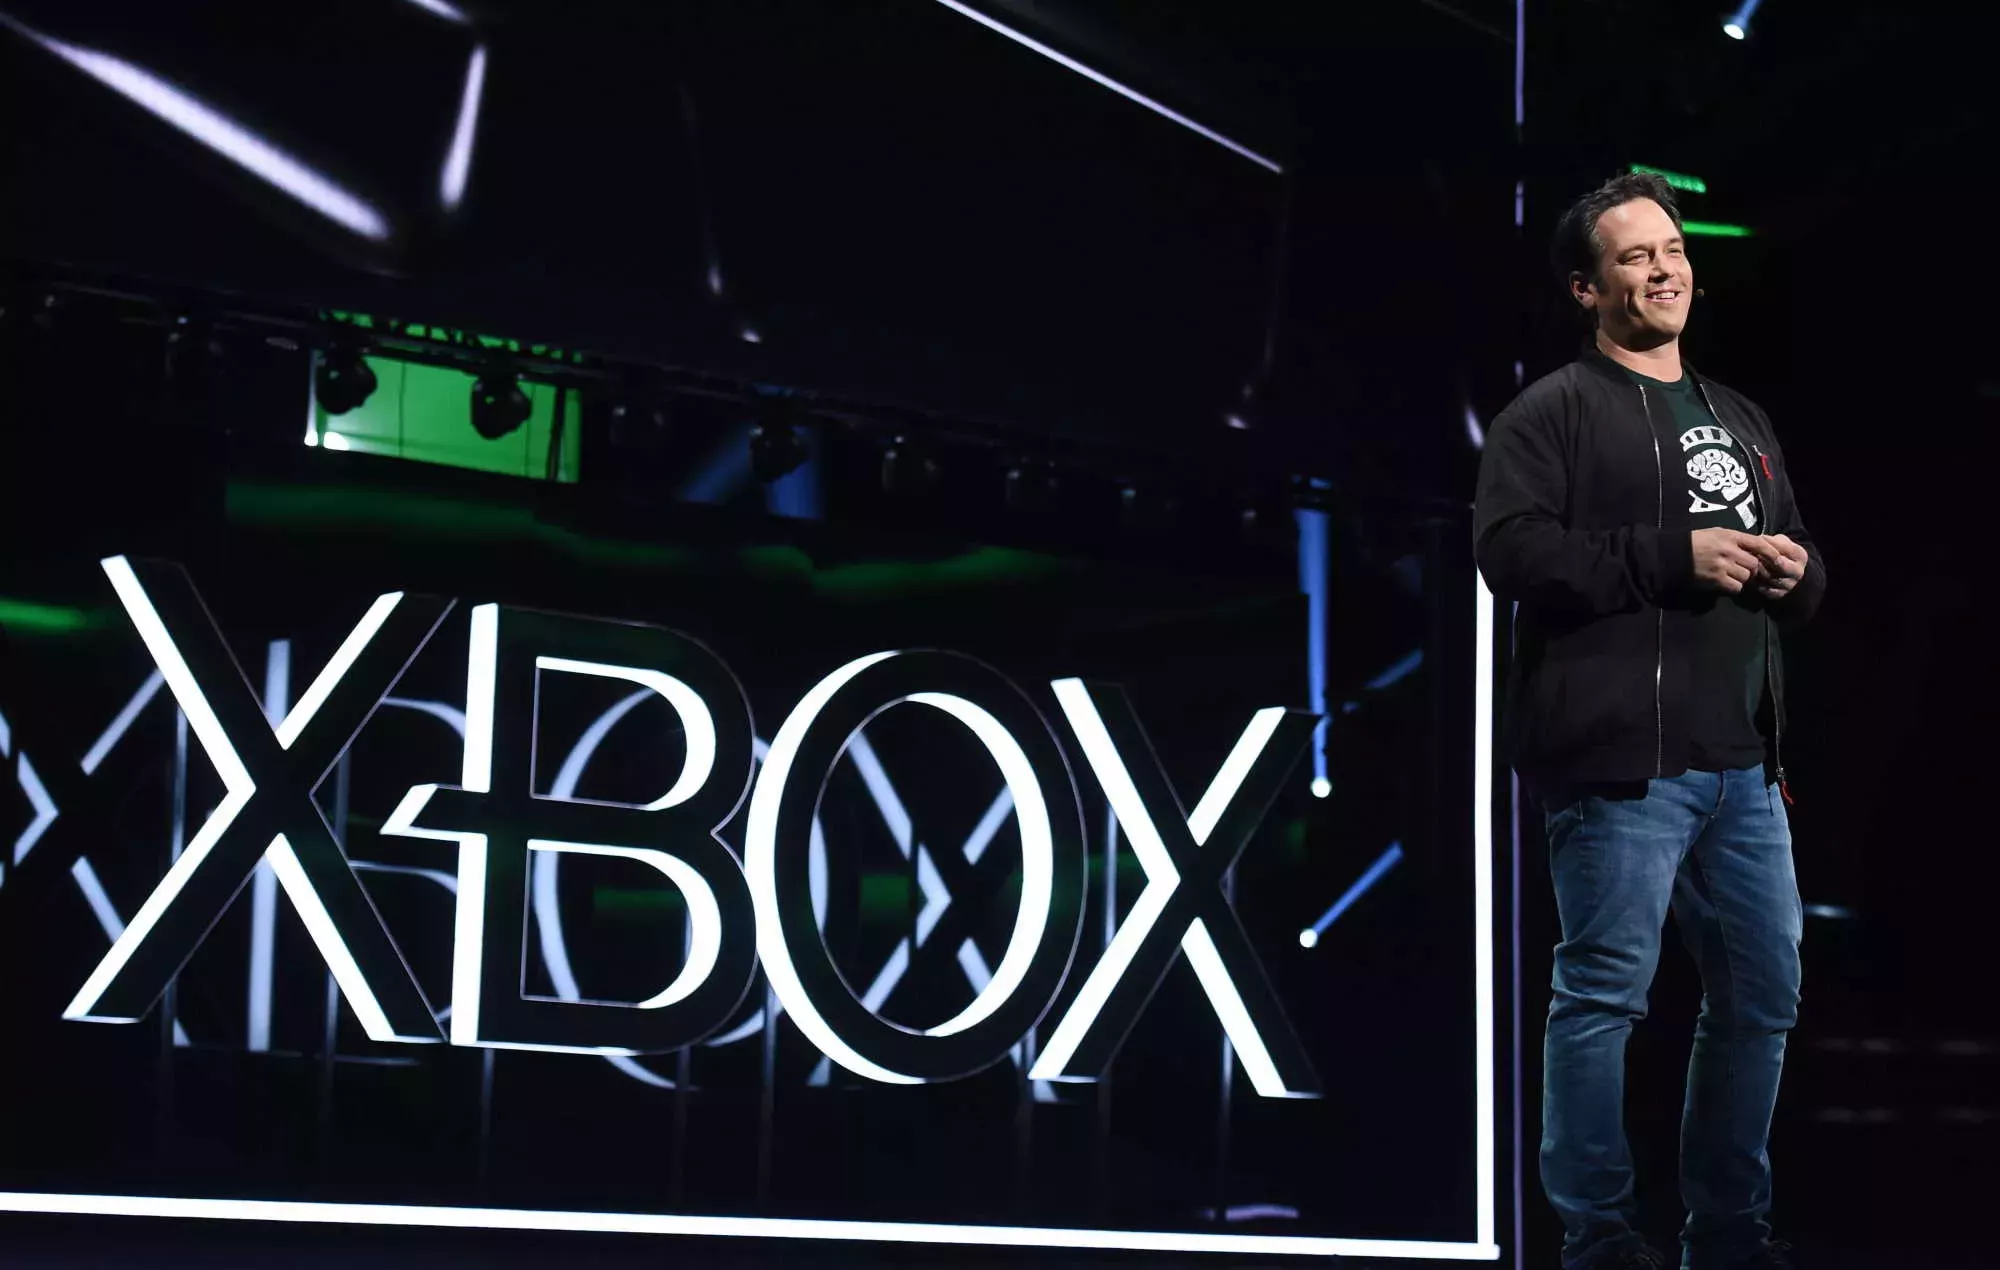 La exposición de Xbox y Bethesda irá seguida de un espectáculo ampliado